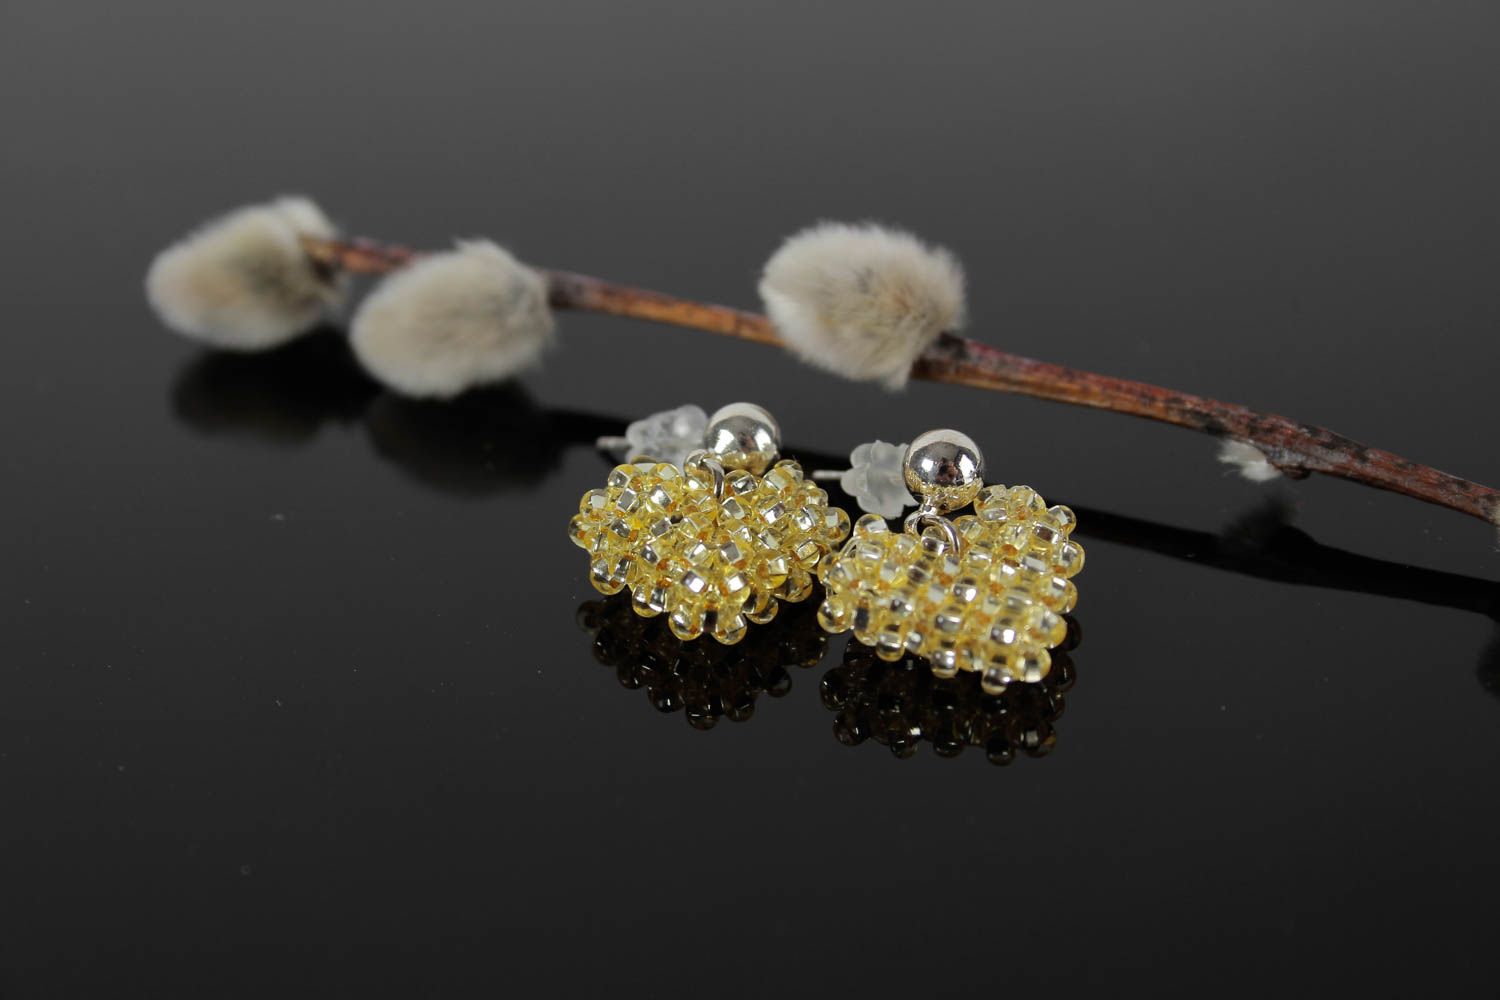 Handmade earrings beads jewelry accessory for women littl earrings best gift photo 1